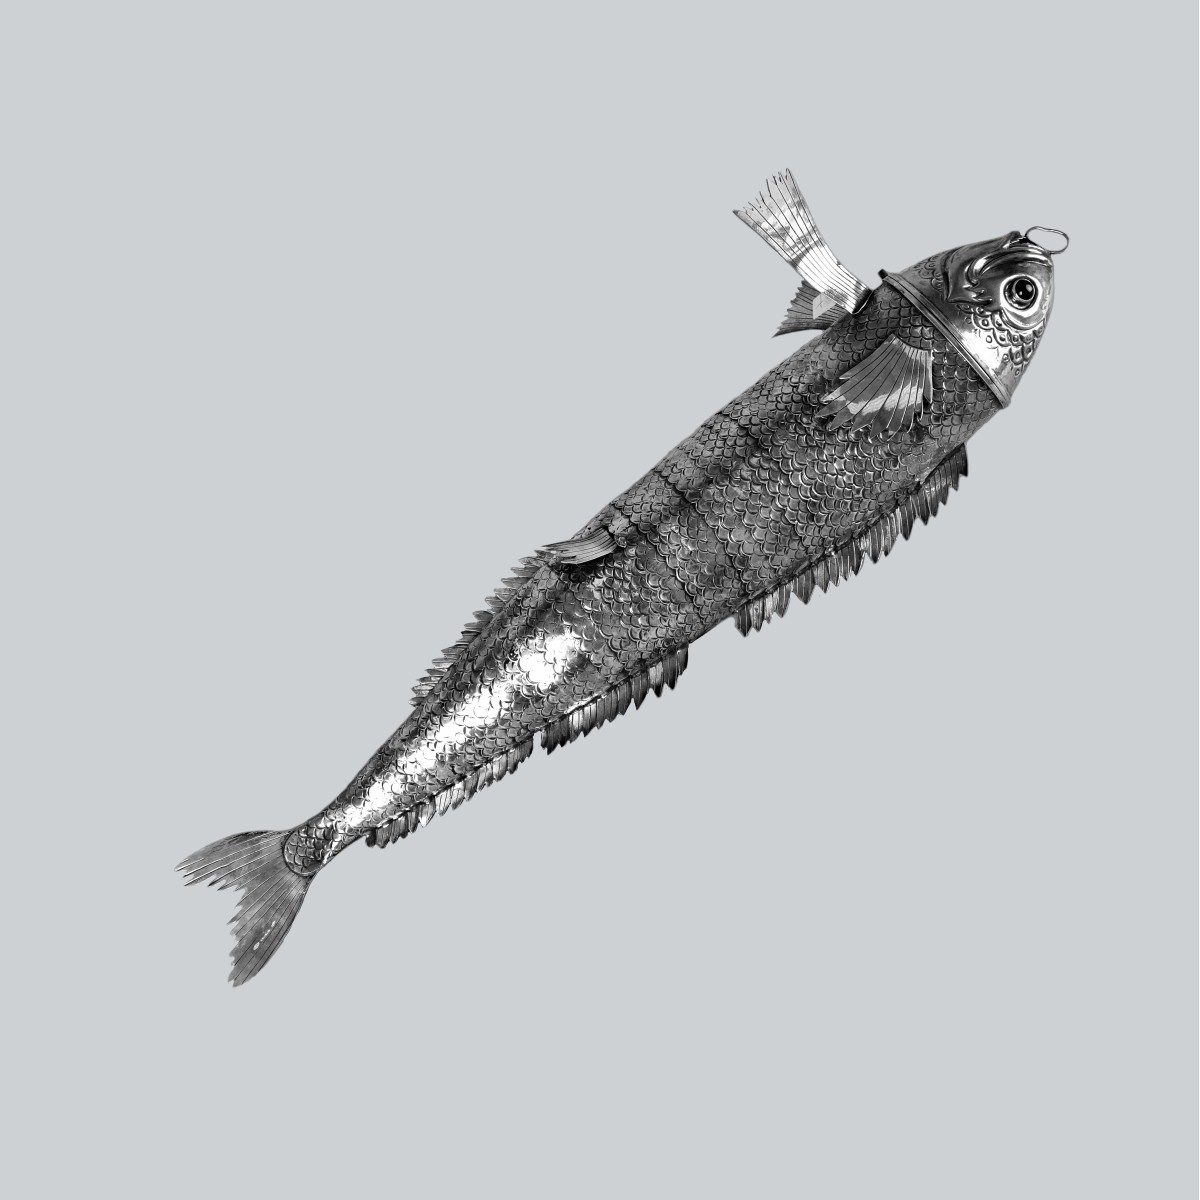 Mario Buccellati (1891 - 1967) 800 Silver Fish